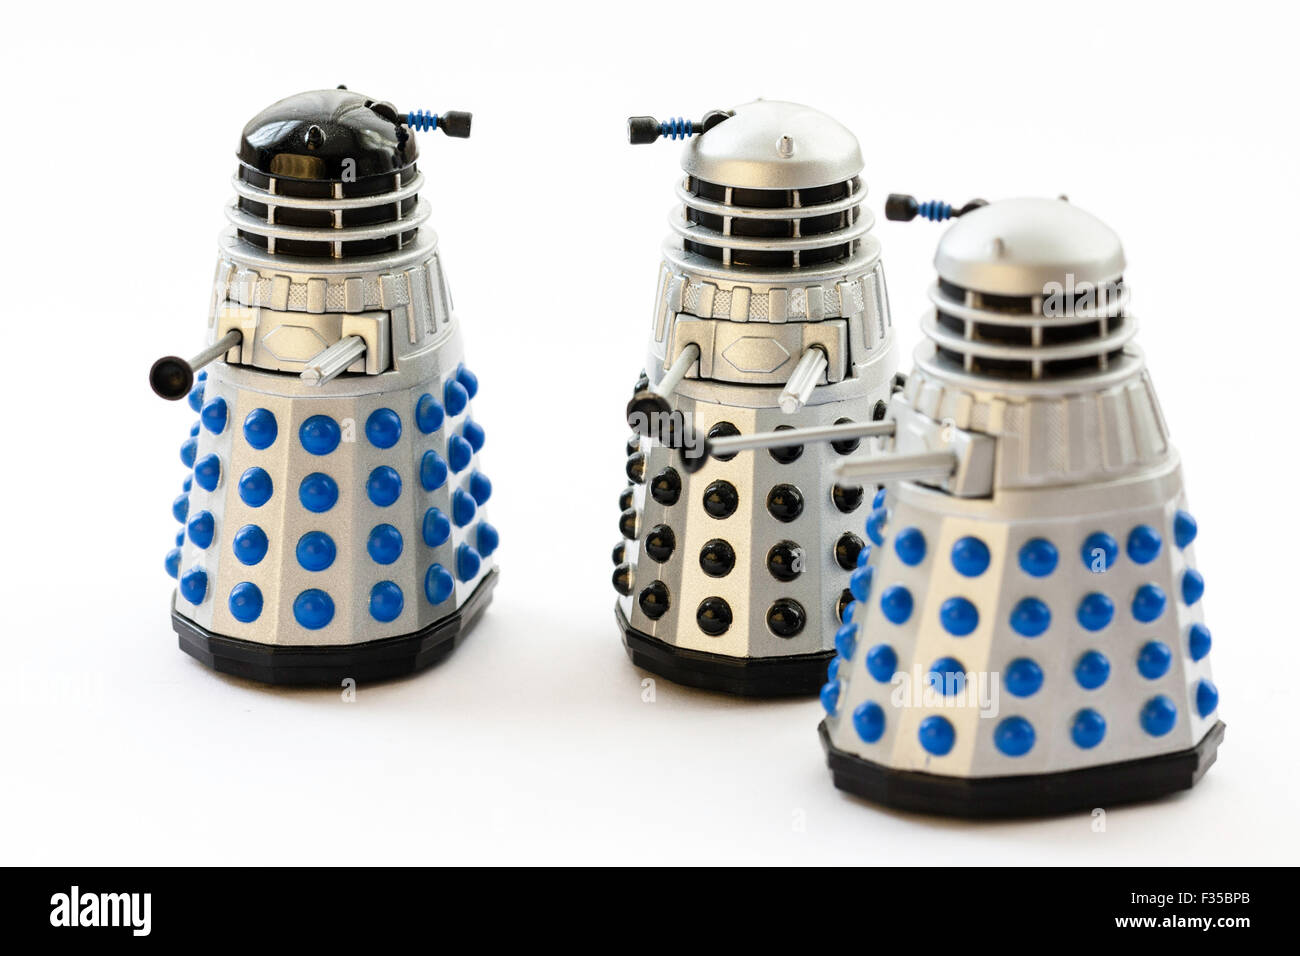 Daleks aus der BBC Dr, die TV-Serie. Berühmte Metal Monster. Corgi Toy, Metall Dalek mit Kopf. Drei verschiedene Arten auf weißem Hintergrund. Stockfoto